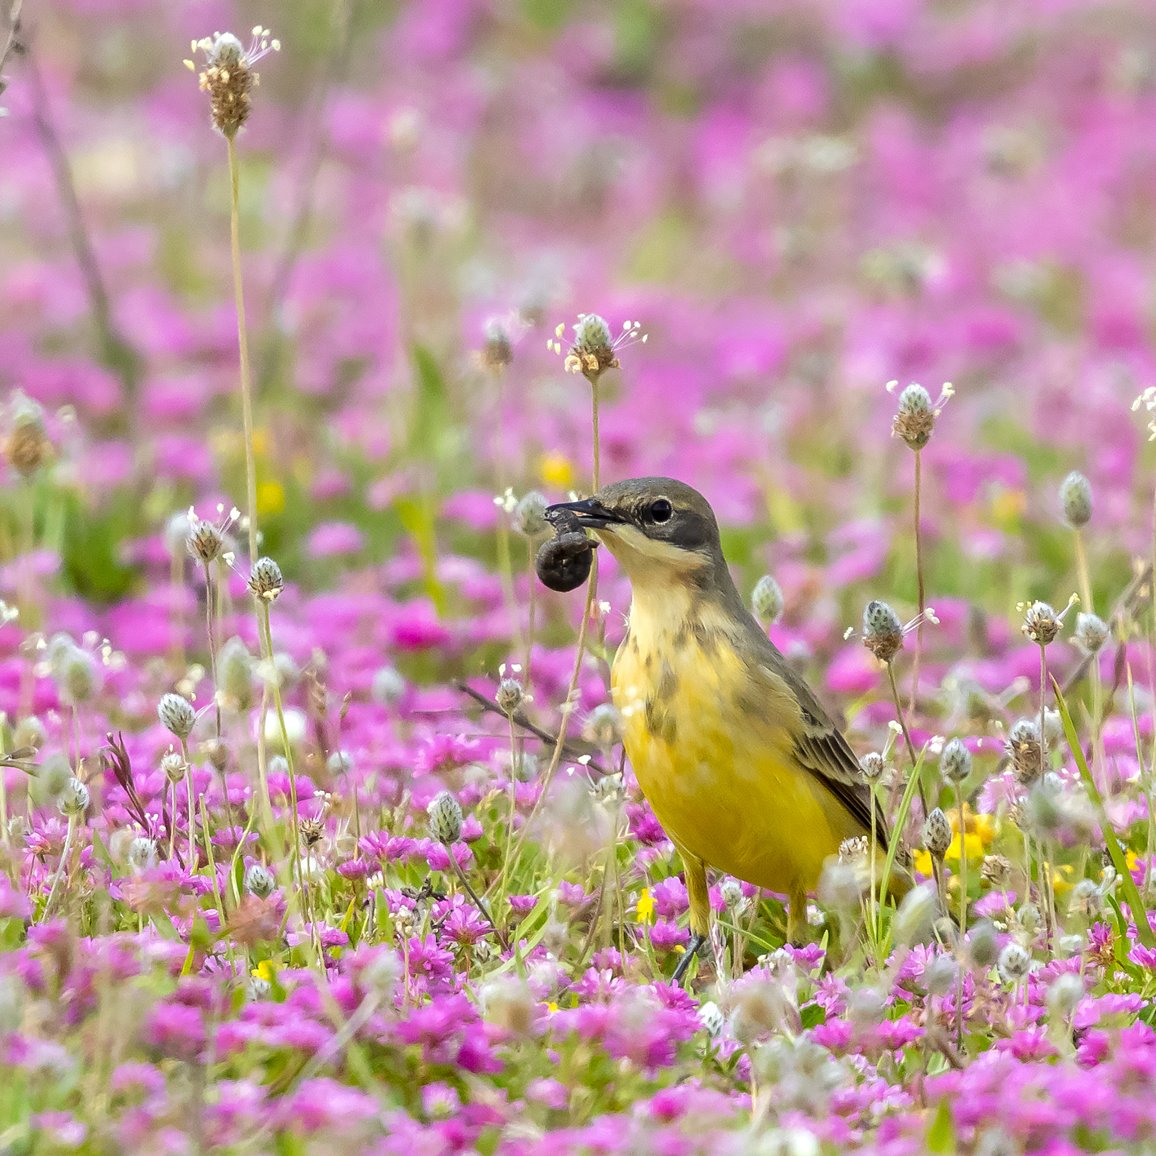 Baharın gelişi ile sadece göçmen kuşlar gelmiyor, Doğa da uyanıyor rengarenk🙂🍀
Sarı kuyruksallayan
#Antalyakuskampi2023 #hangitür